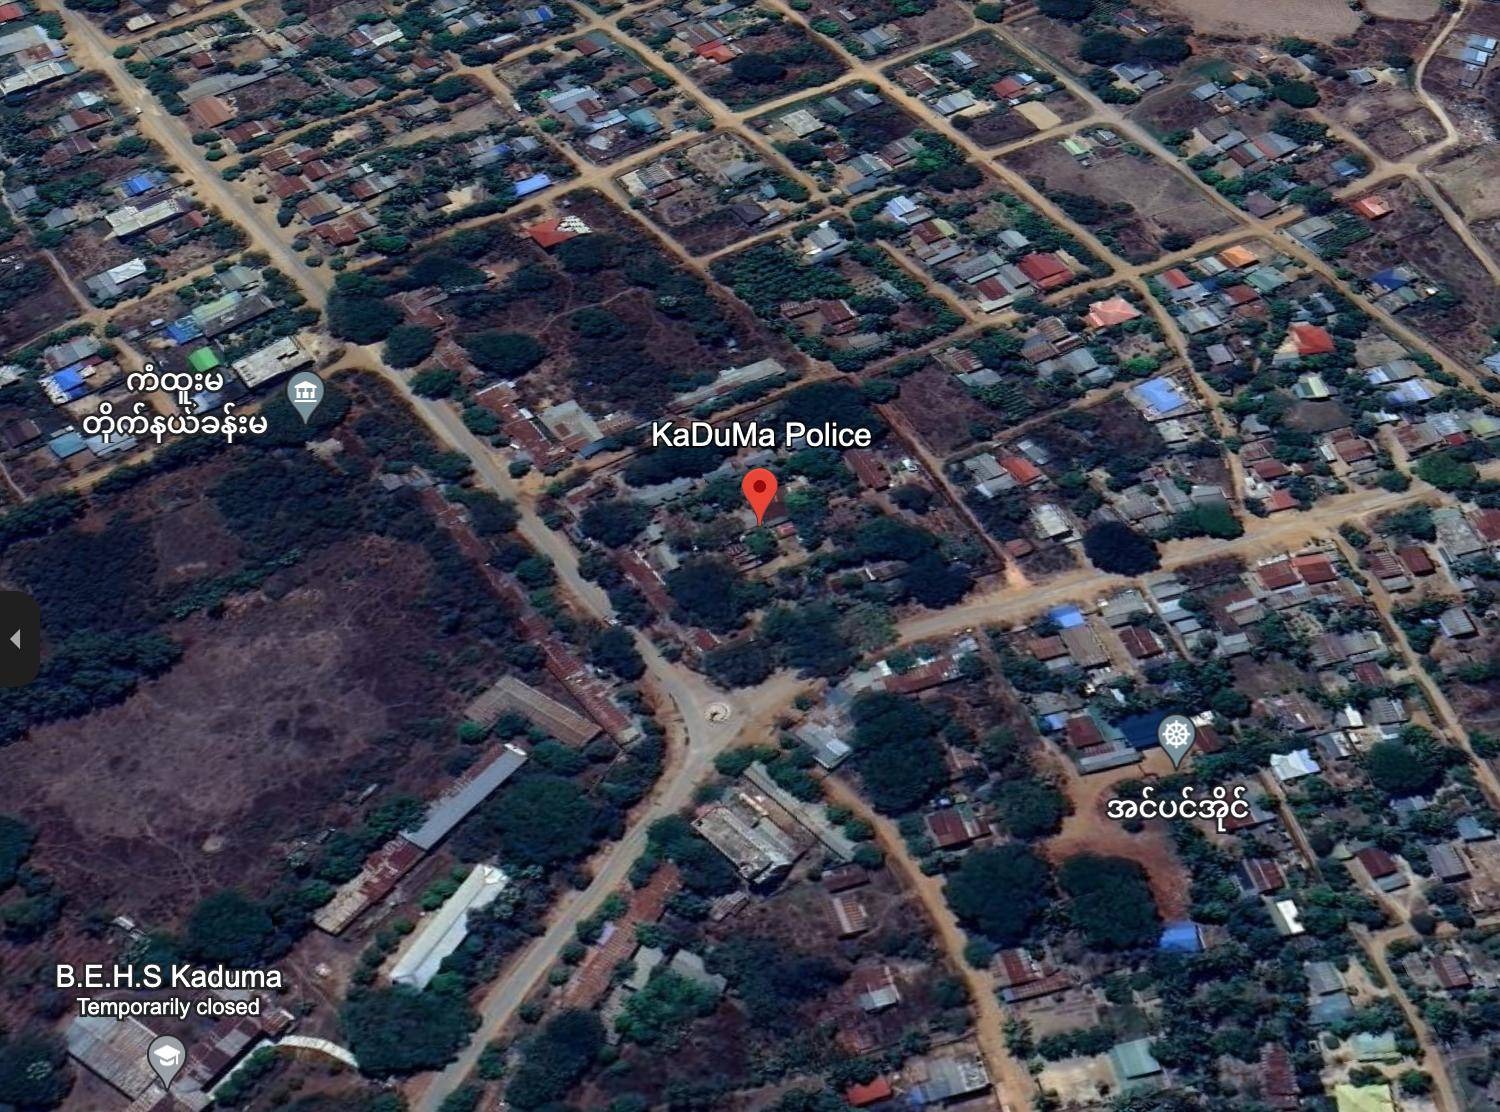 တန့်ဆည်မြို့နယ်၊ ကံထူးမရဲစခန်းကို ဝင်တိုက်၊ စစ်တပ်ဘက်က အကျအဆုံးများပြီး စခန်းကို ဘူဒိုဇာနဲ့ ရှင်းလင်းခဲ့